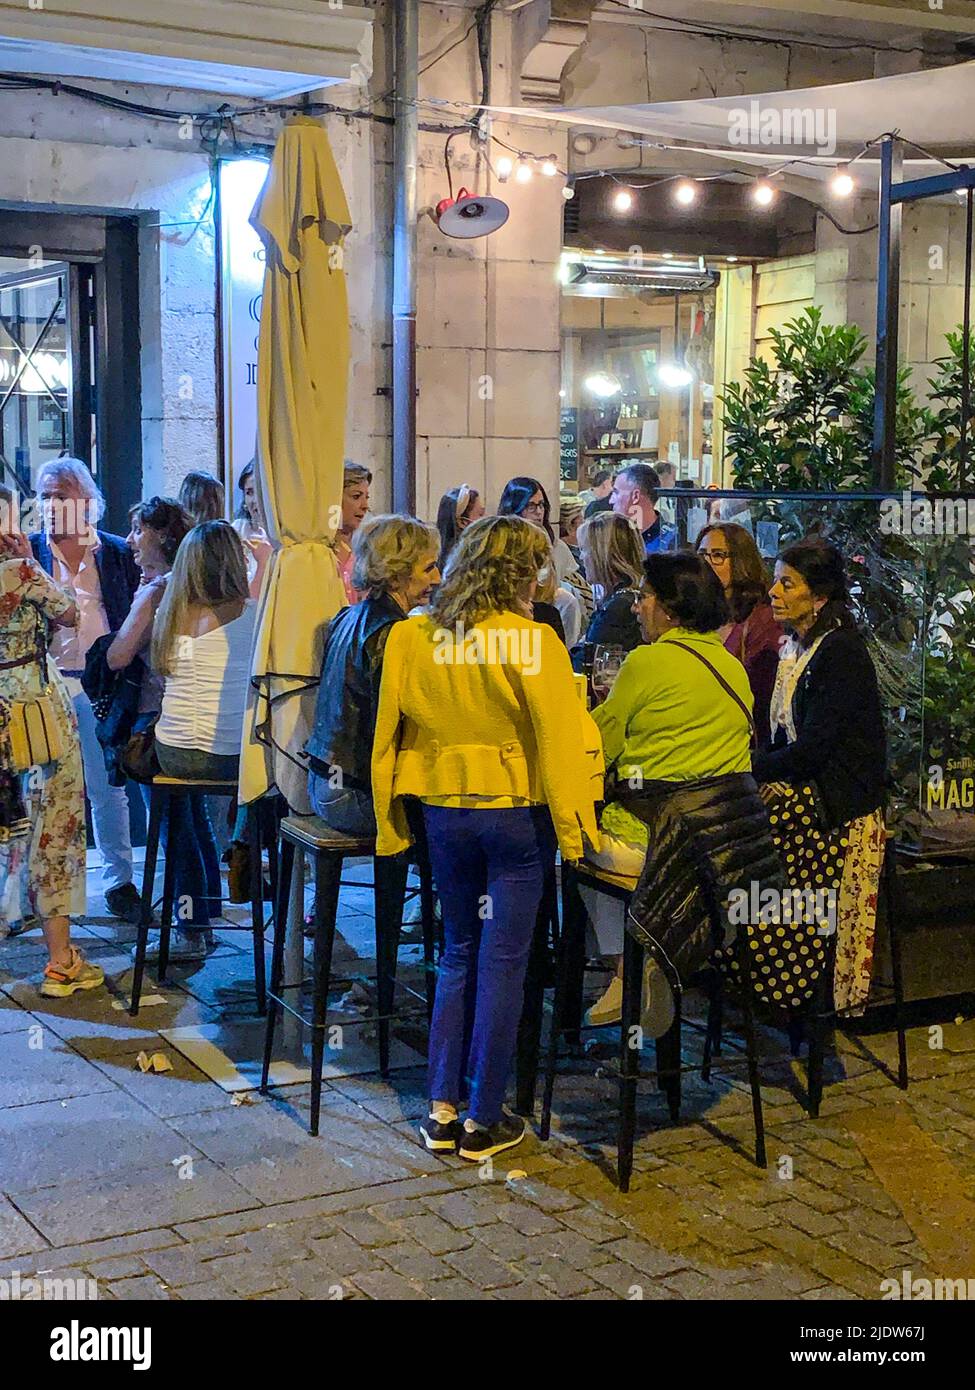 España, Burgos. Vida nocturna en la calle, café en la acera. Foto de stock